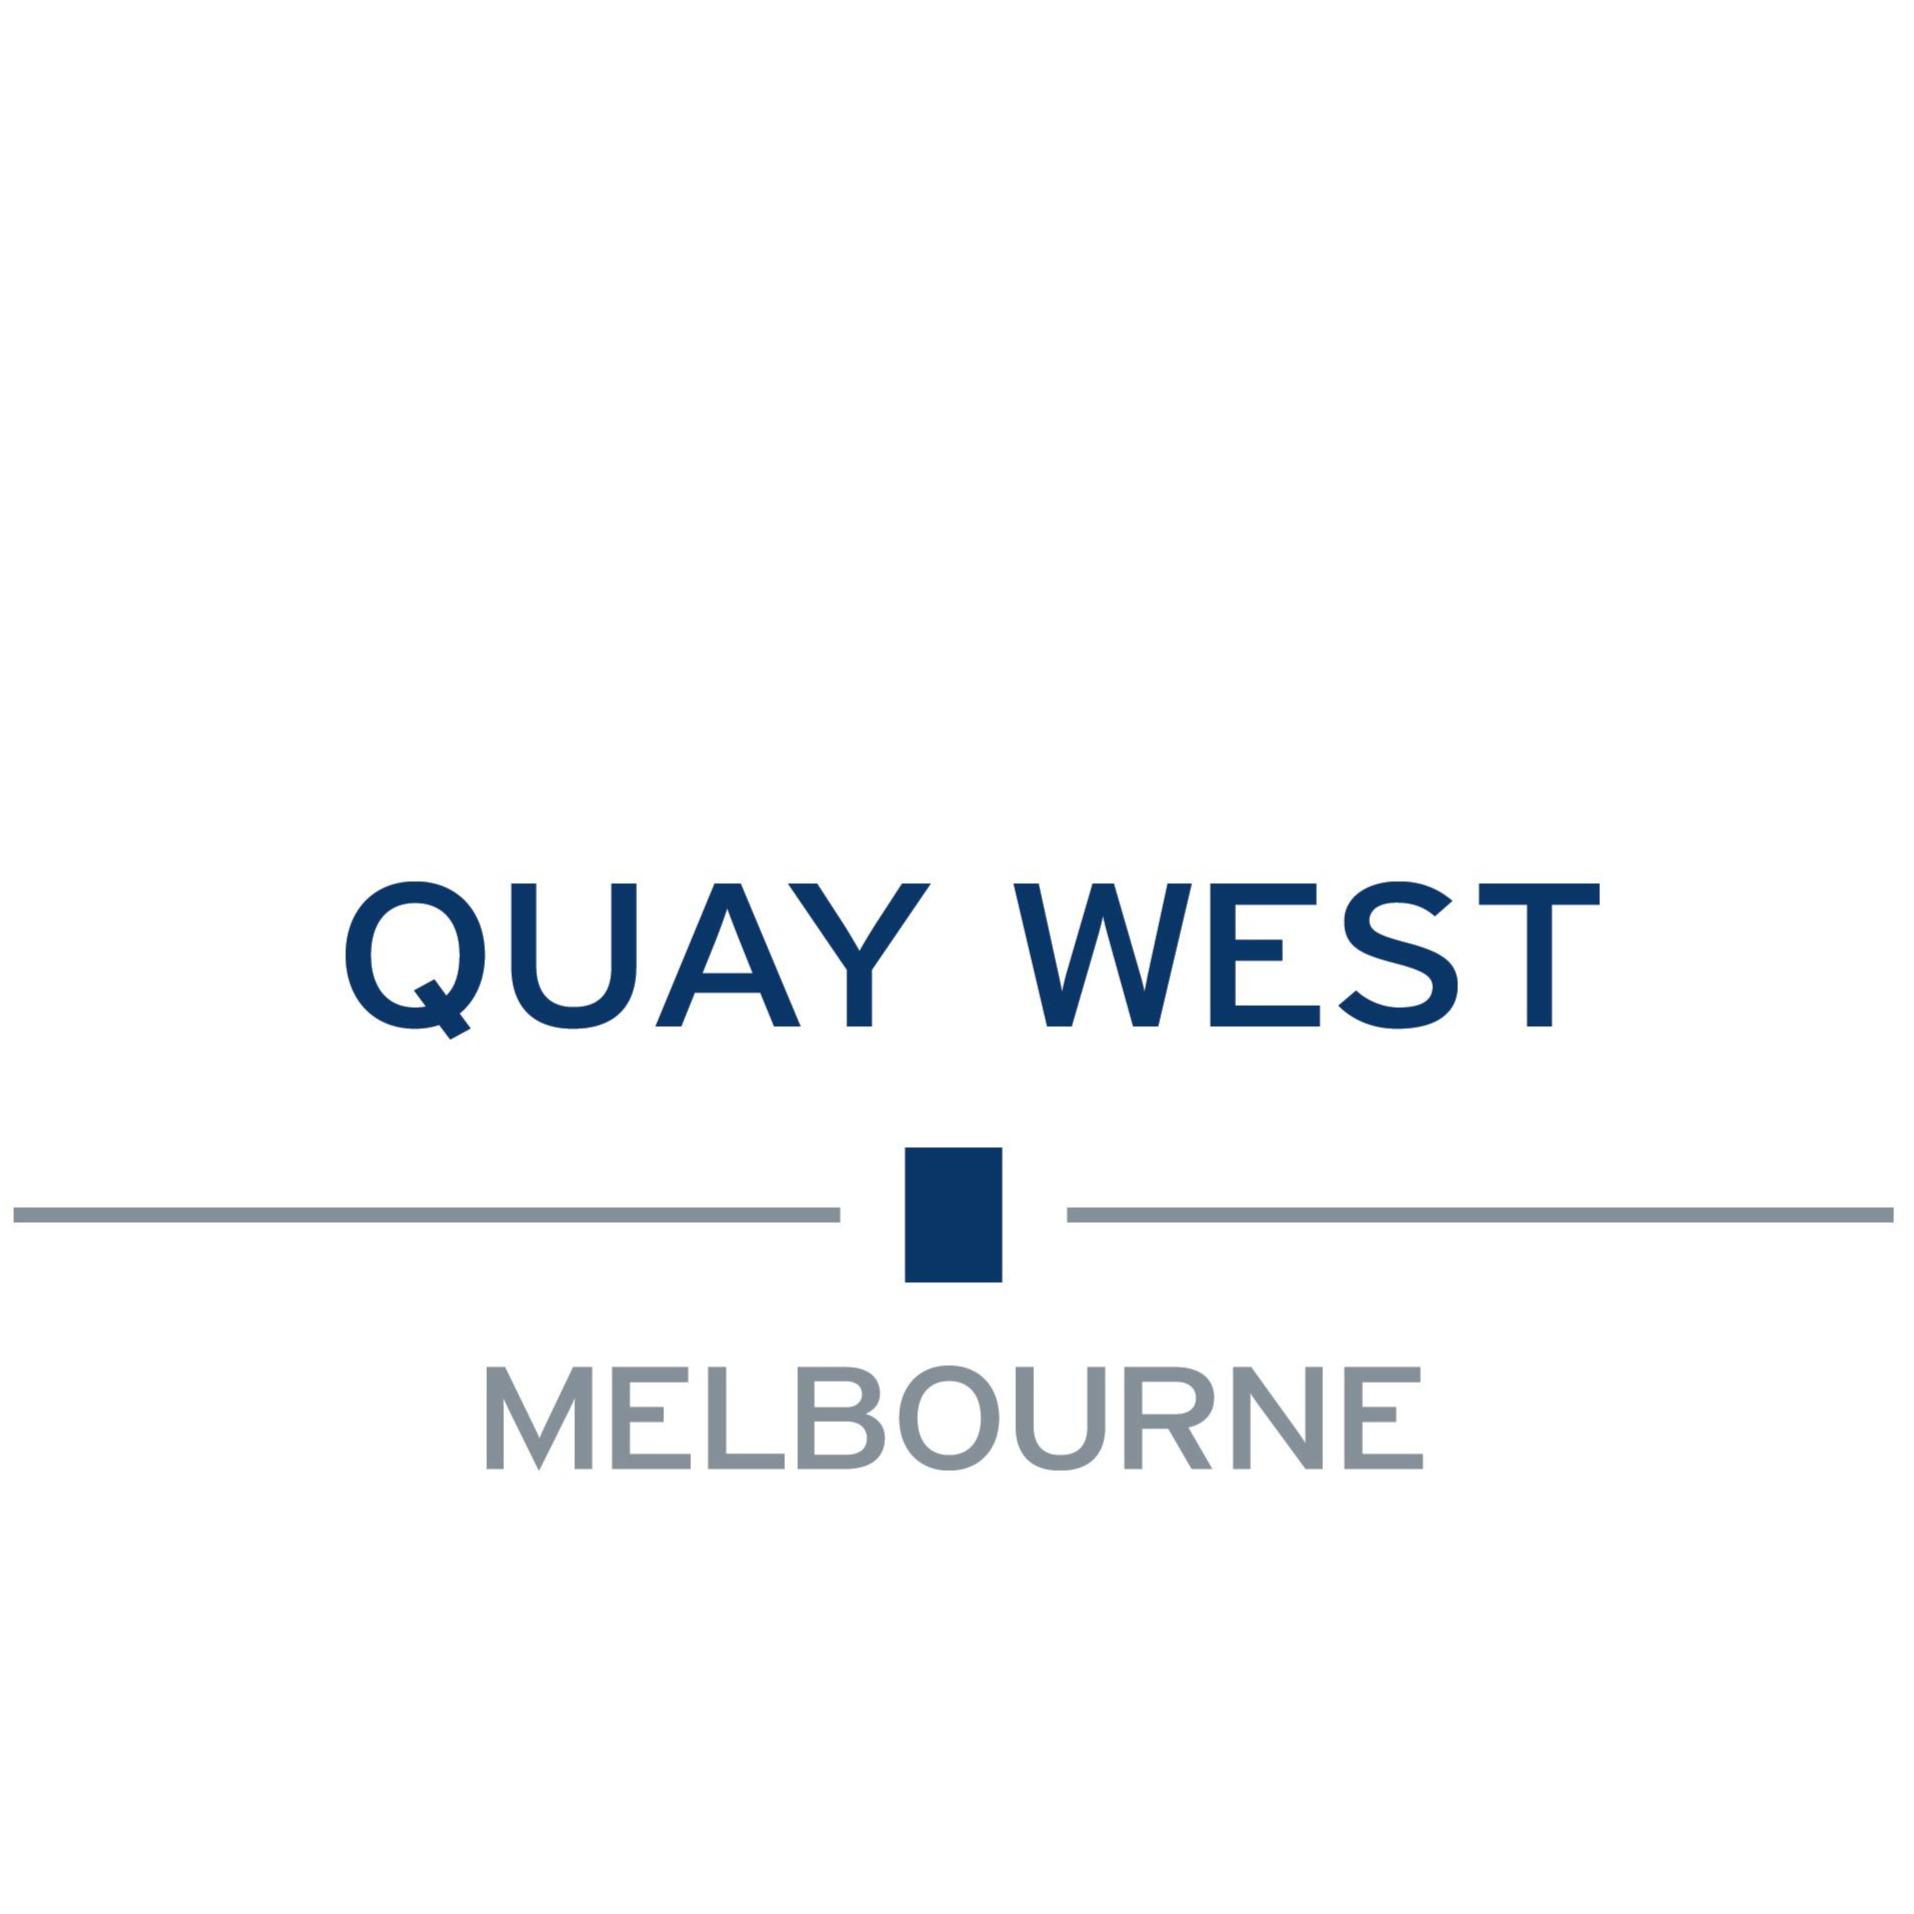 Quay West Suites Melbourne - Melbourne, VIC 3006 - (03) 9693 6000 | ShowMeLocal.com